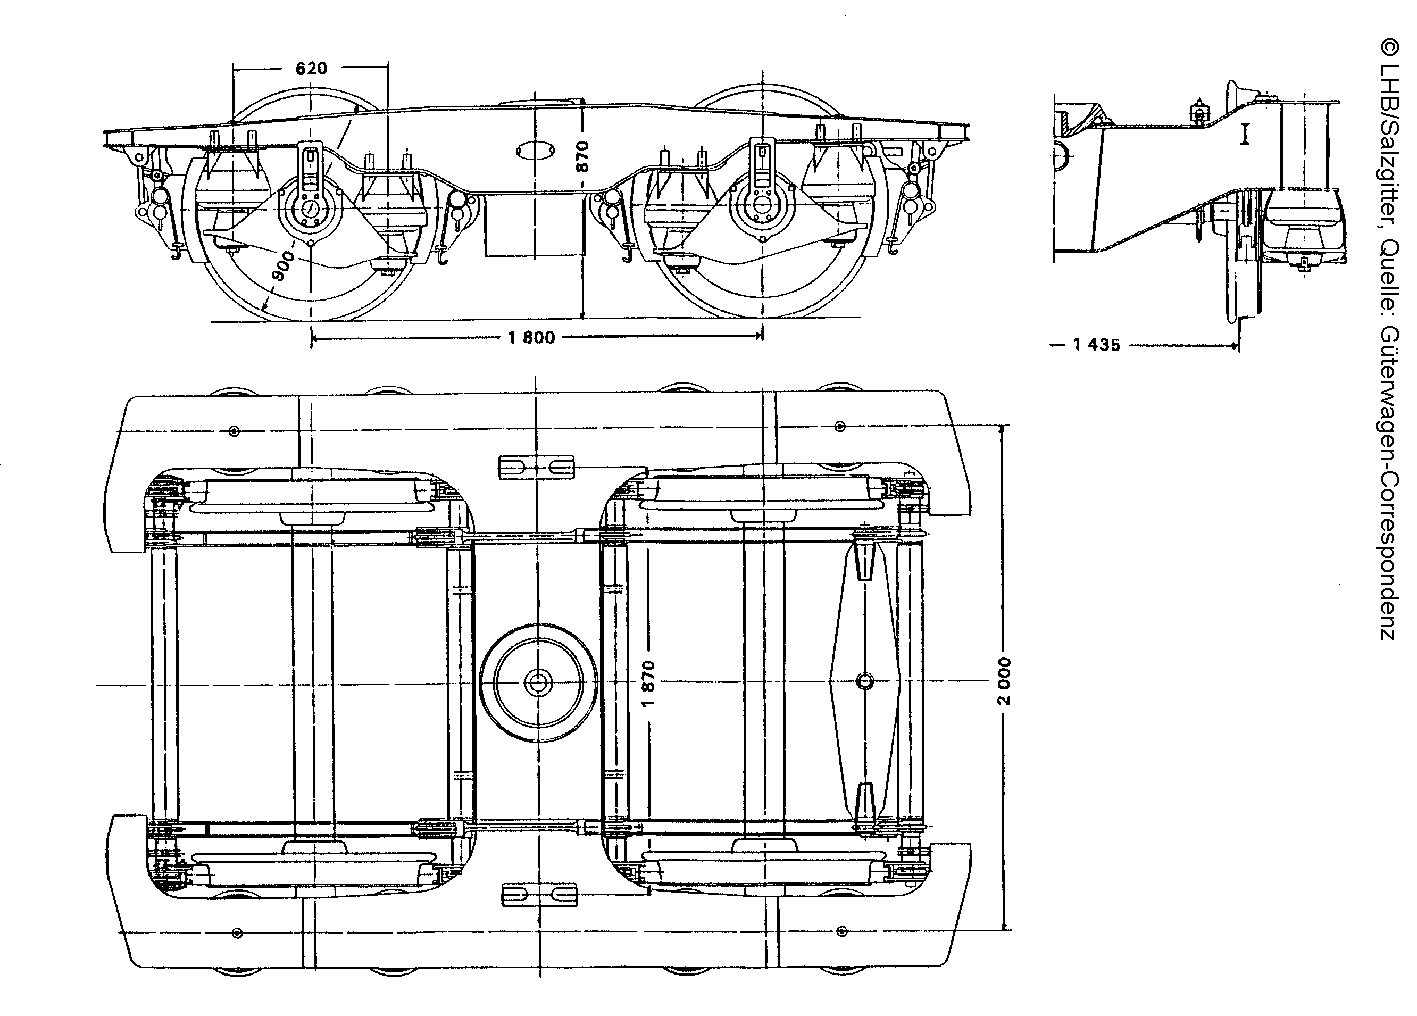 Drehgestell LHB 64/Clouth mit Gummirollfedern, Zeichnung; Quelle: Güterwagen-Correspondenz